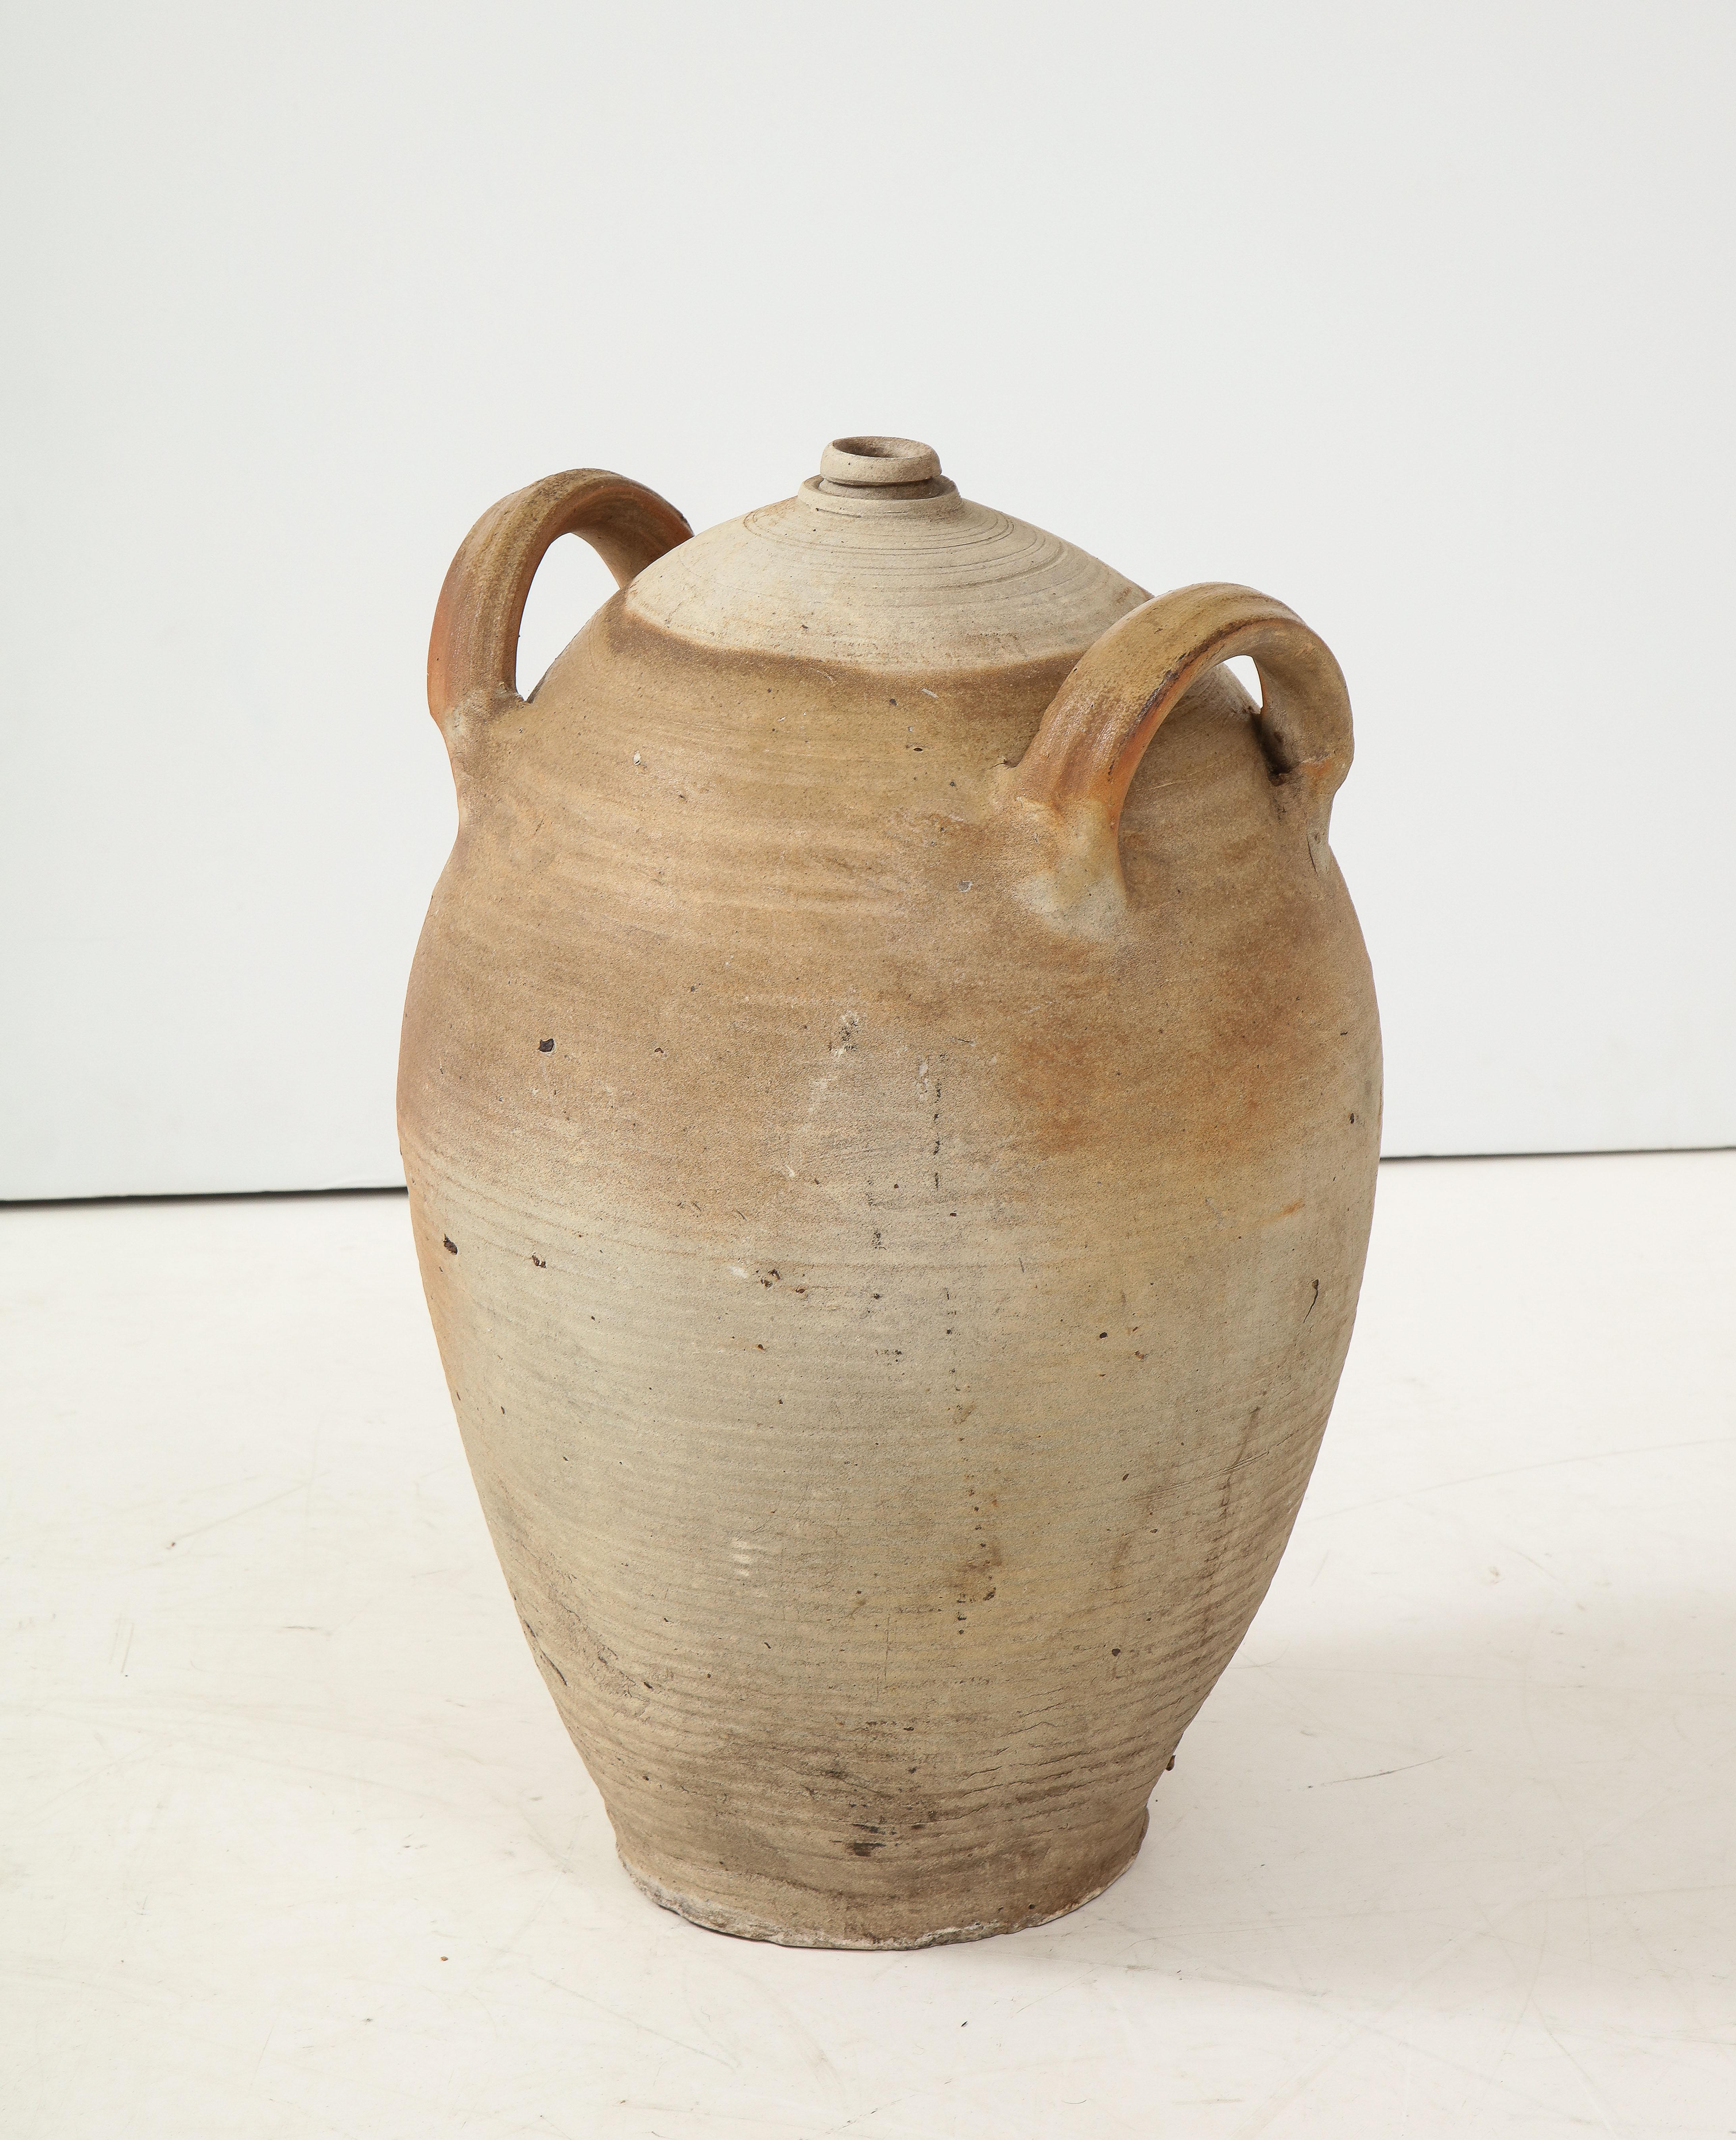 French Provincial Stoneware Vintage Pottery Oil Jar, Jug, Vase or Vessel 6